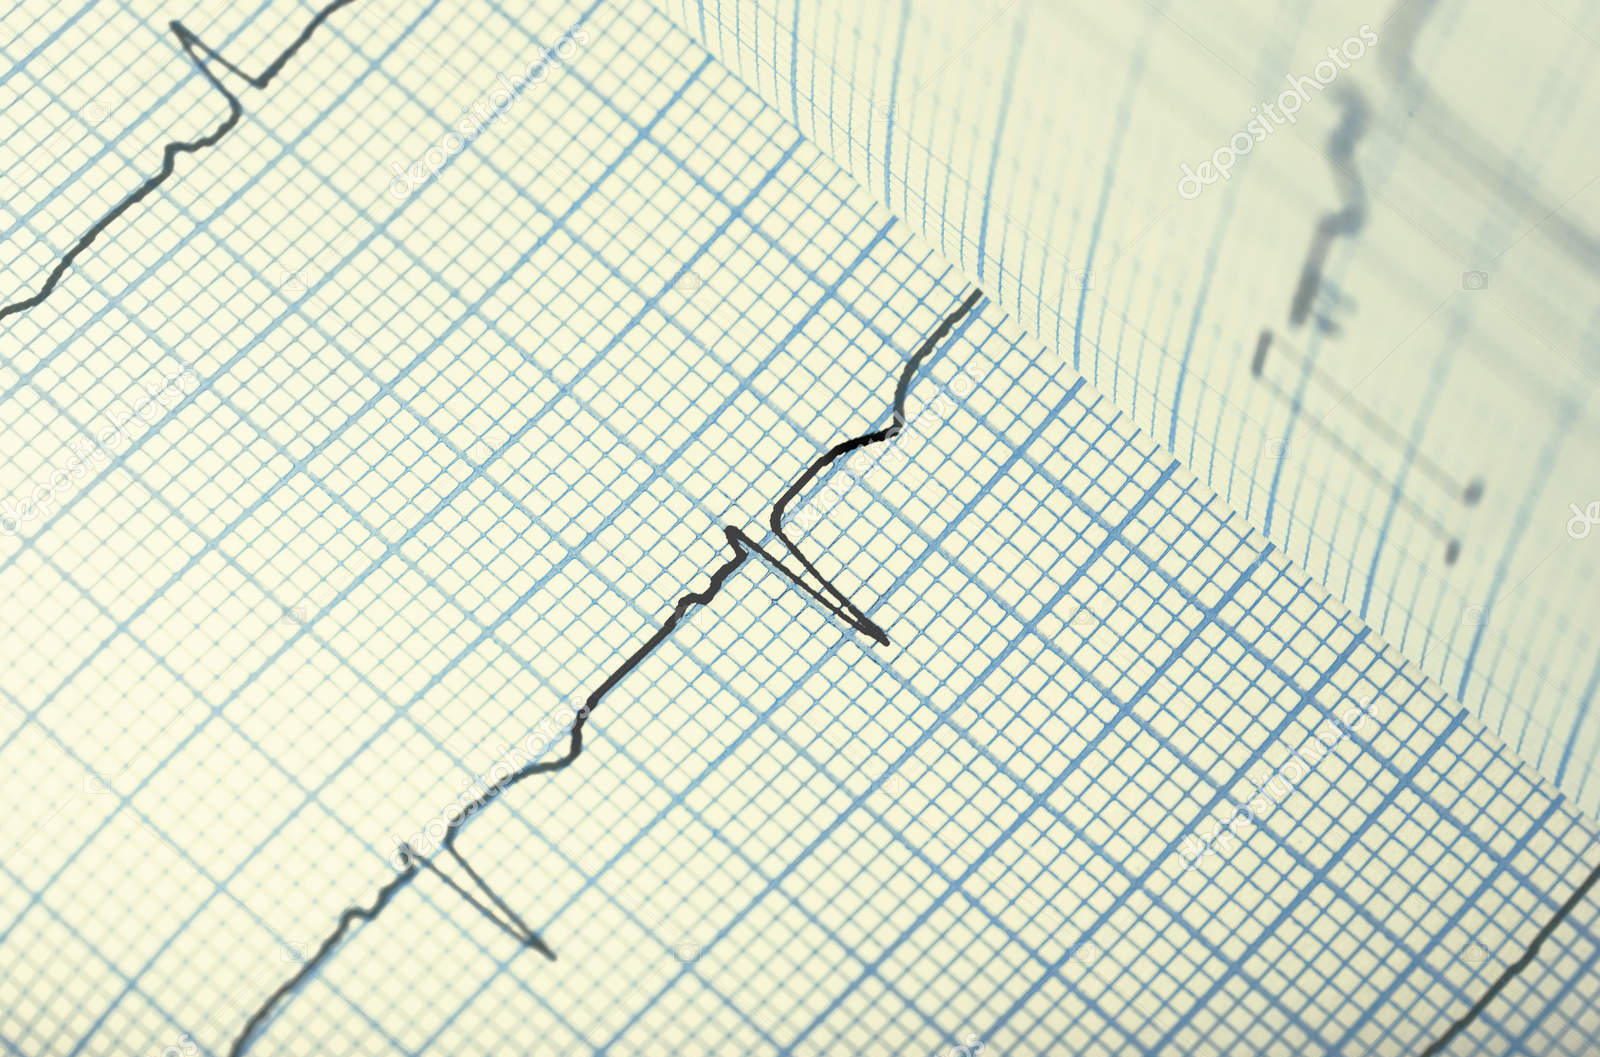 جهاز تخطيط القلب / رسم القلب EKG1212T · سوق البلد للاعلانات المجانية